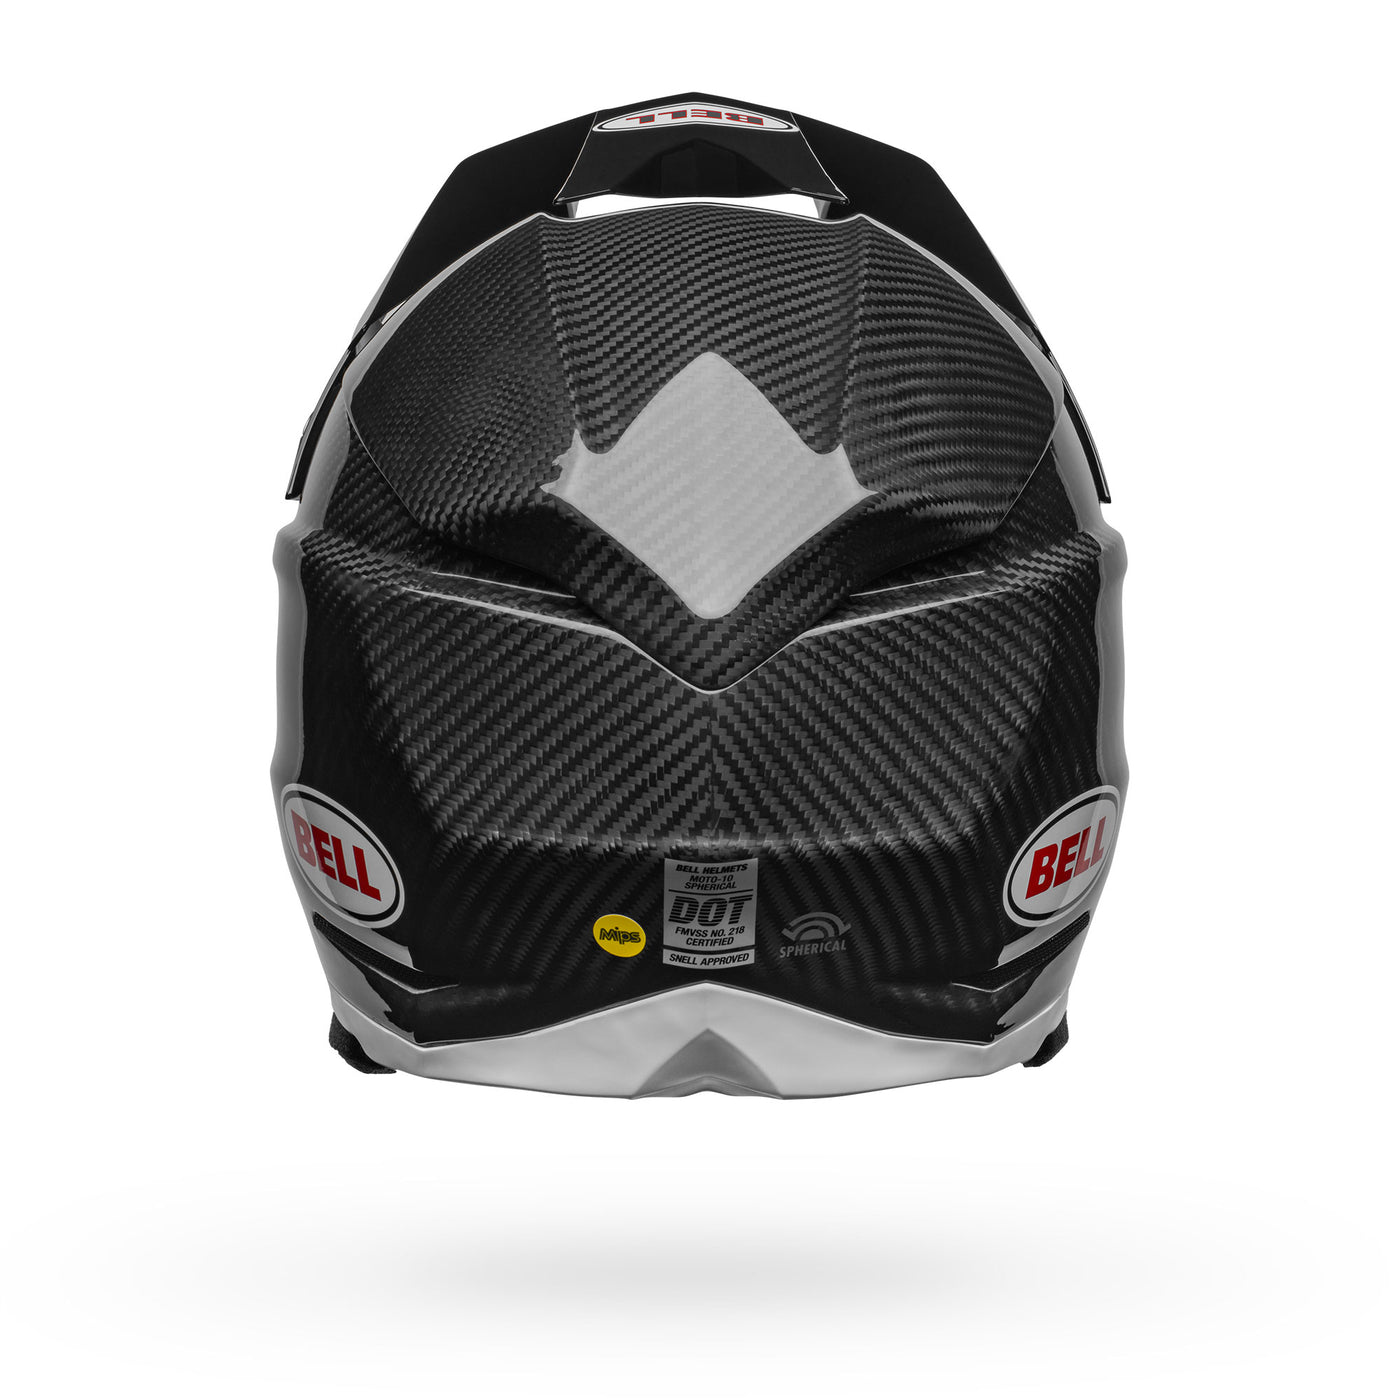 bell moto 10 spherical carbon dirt motorcycle helmet gloss black white back